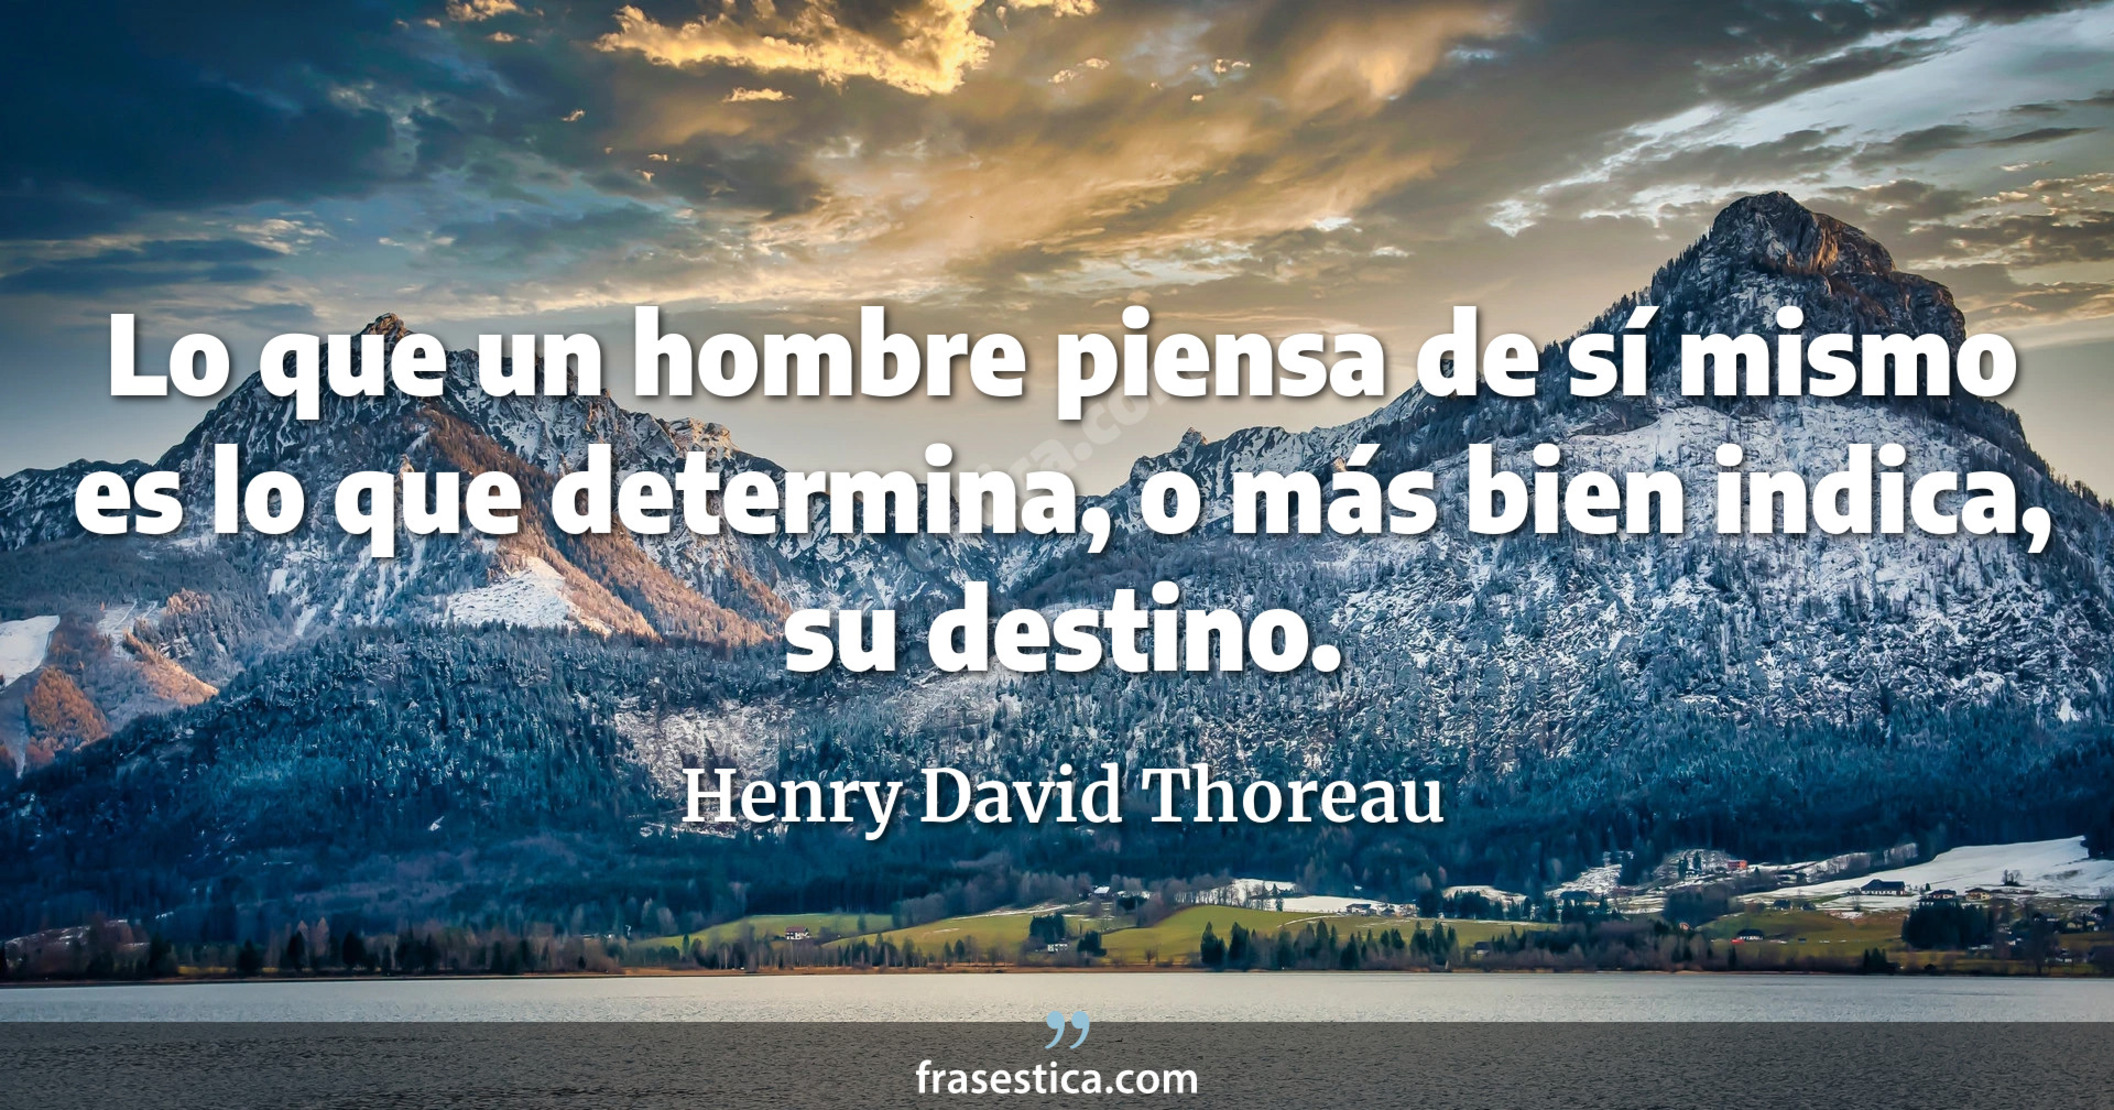 Lo que un hombre piensa de sí mismo es lo que determina, o más bien indica, su destino. - Henry David Thoreau